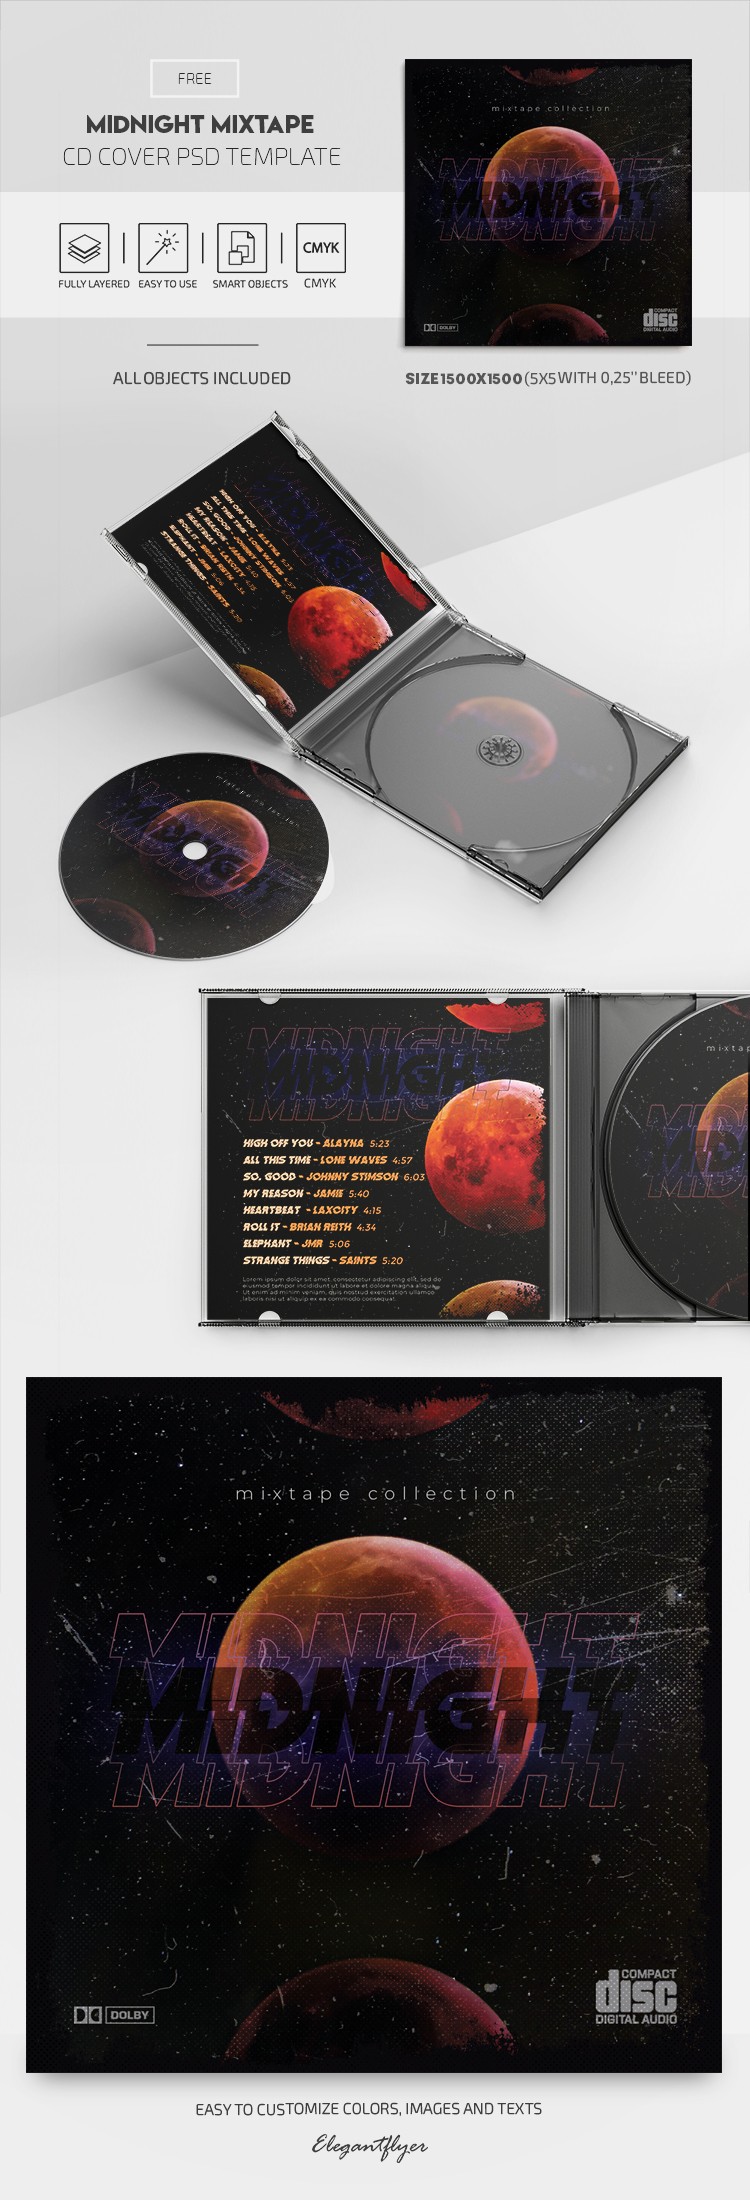 Okładka płyty CD "Midnight Mixtape" by ElegantFlyer